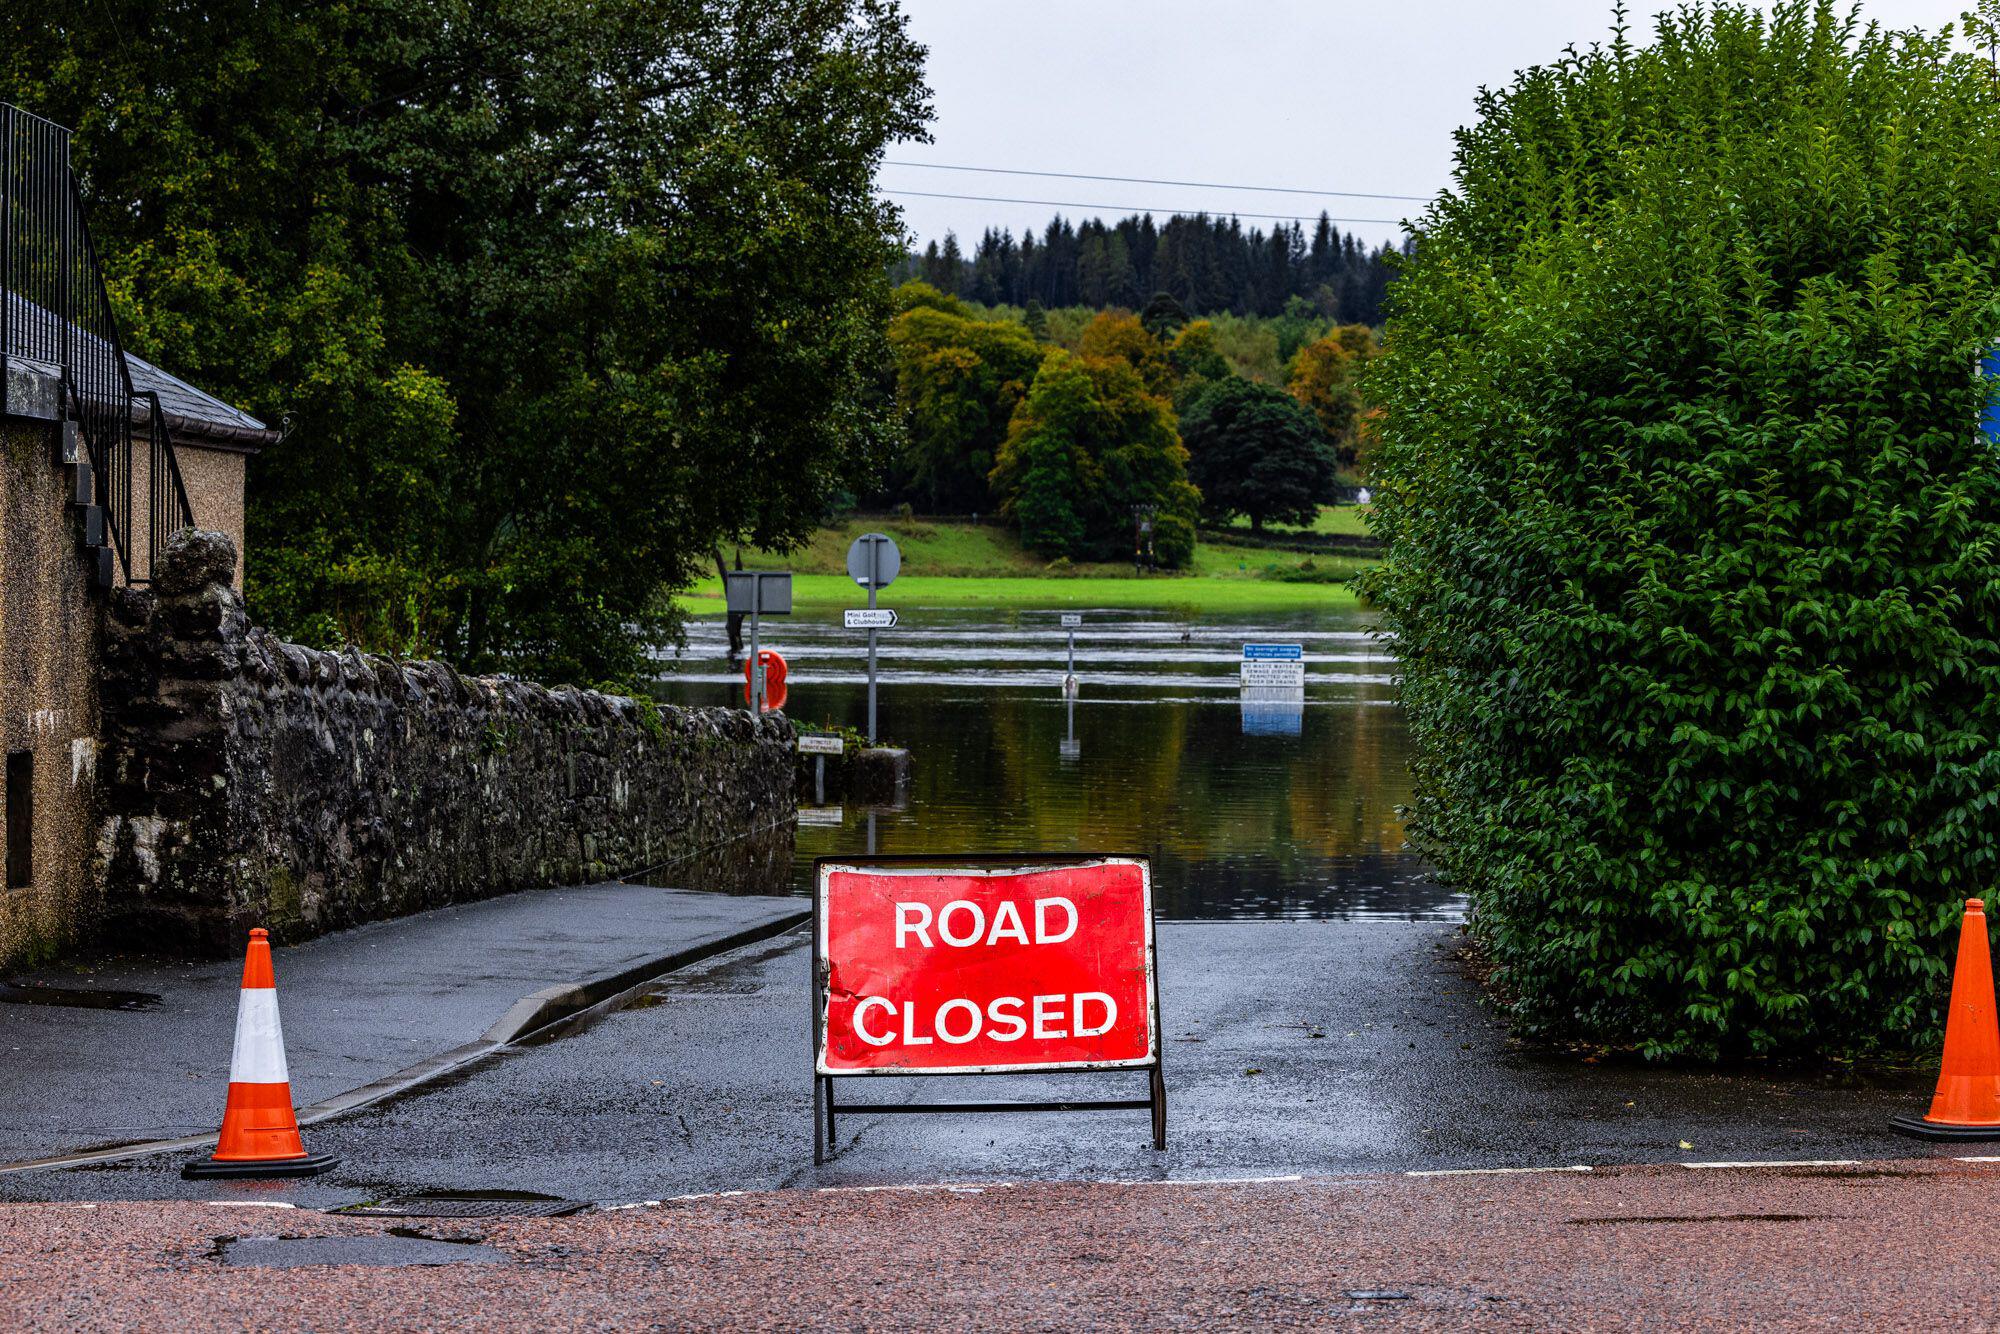 Die Hochlandstadt Callander wurde gestern überschwemmt, als das Ufer des Flusses Teith brach